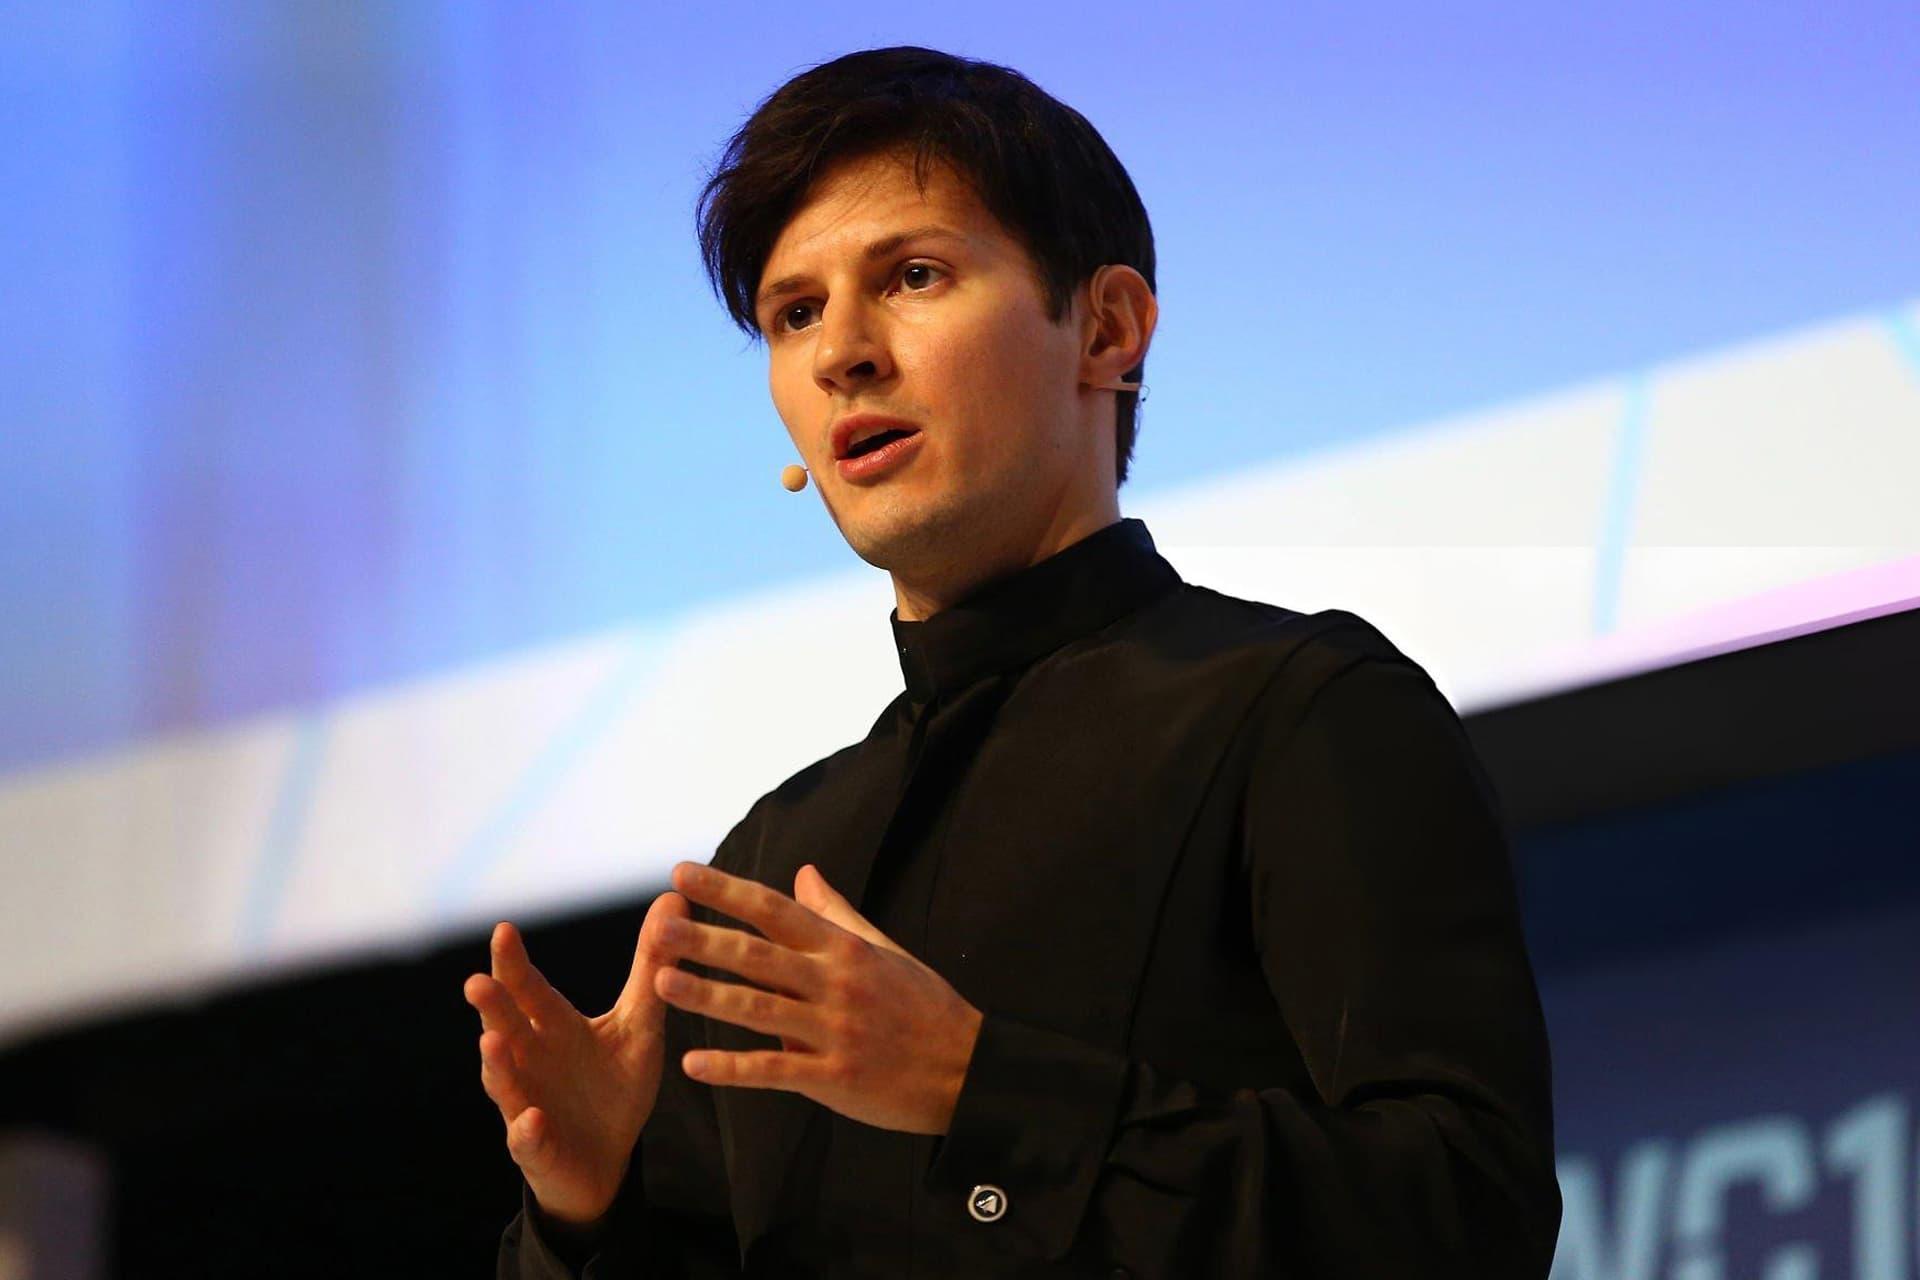 پاول دورف / Pavel Durov مدیرعامل تلگرام لباس مشکی در حال سخنرانی